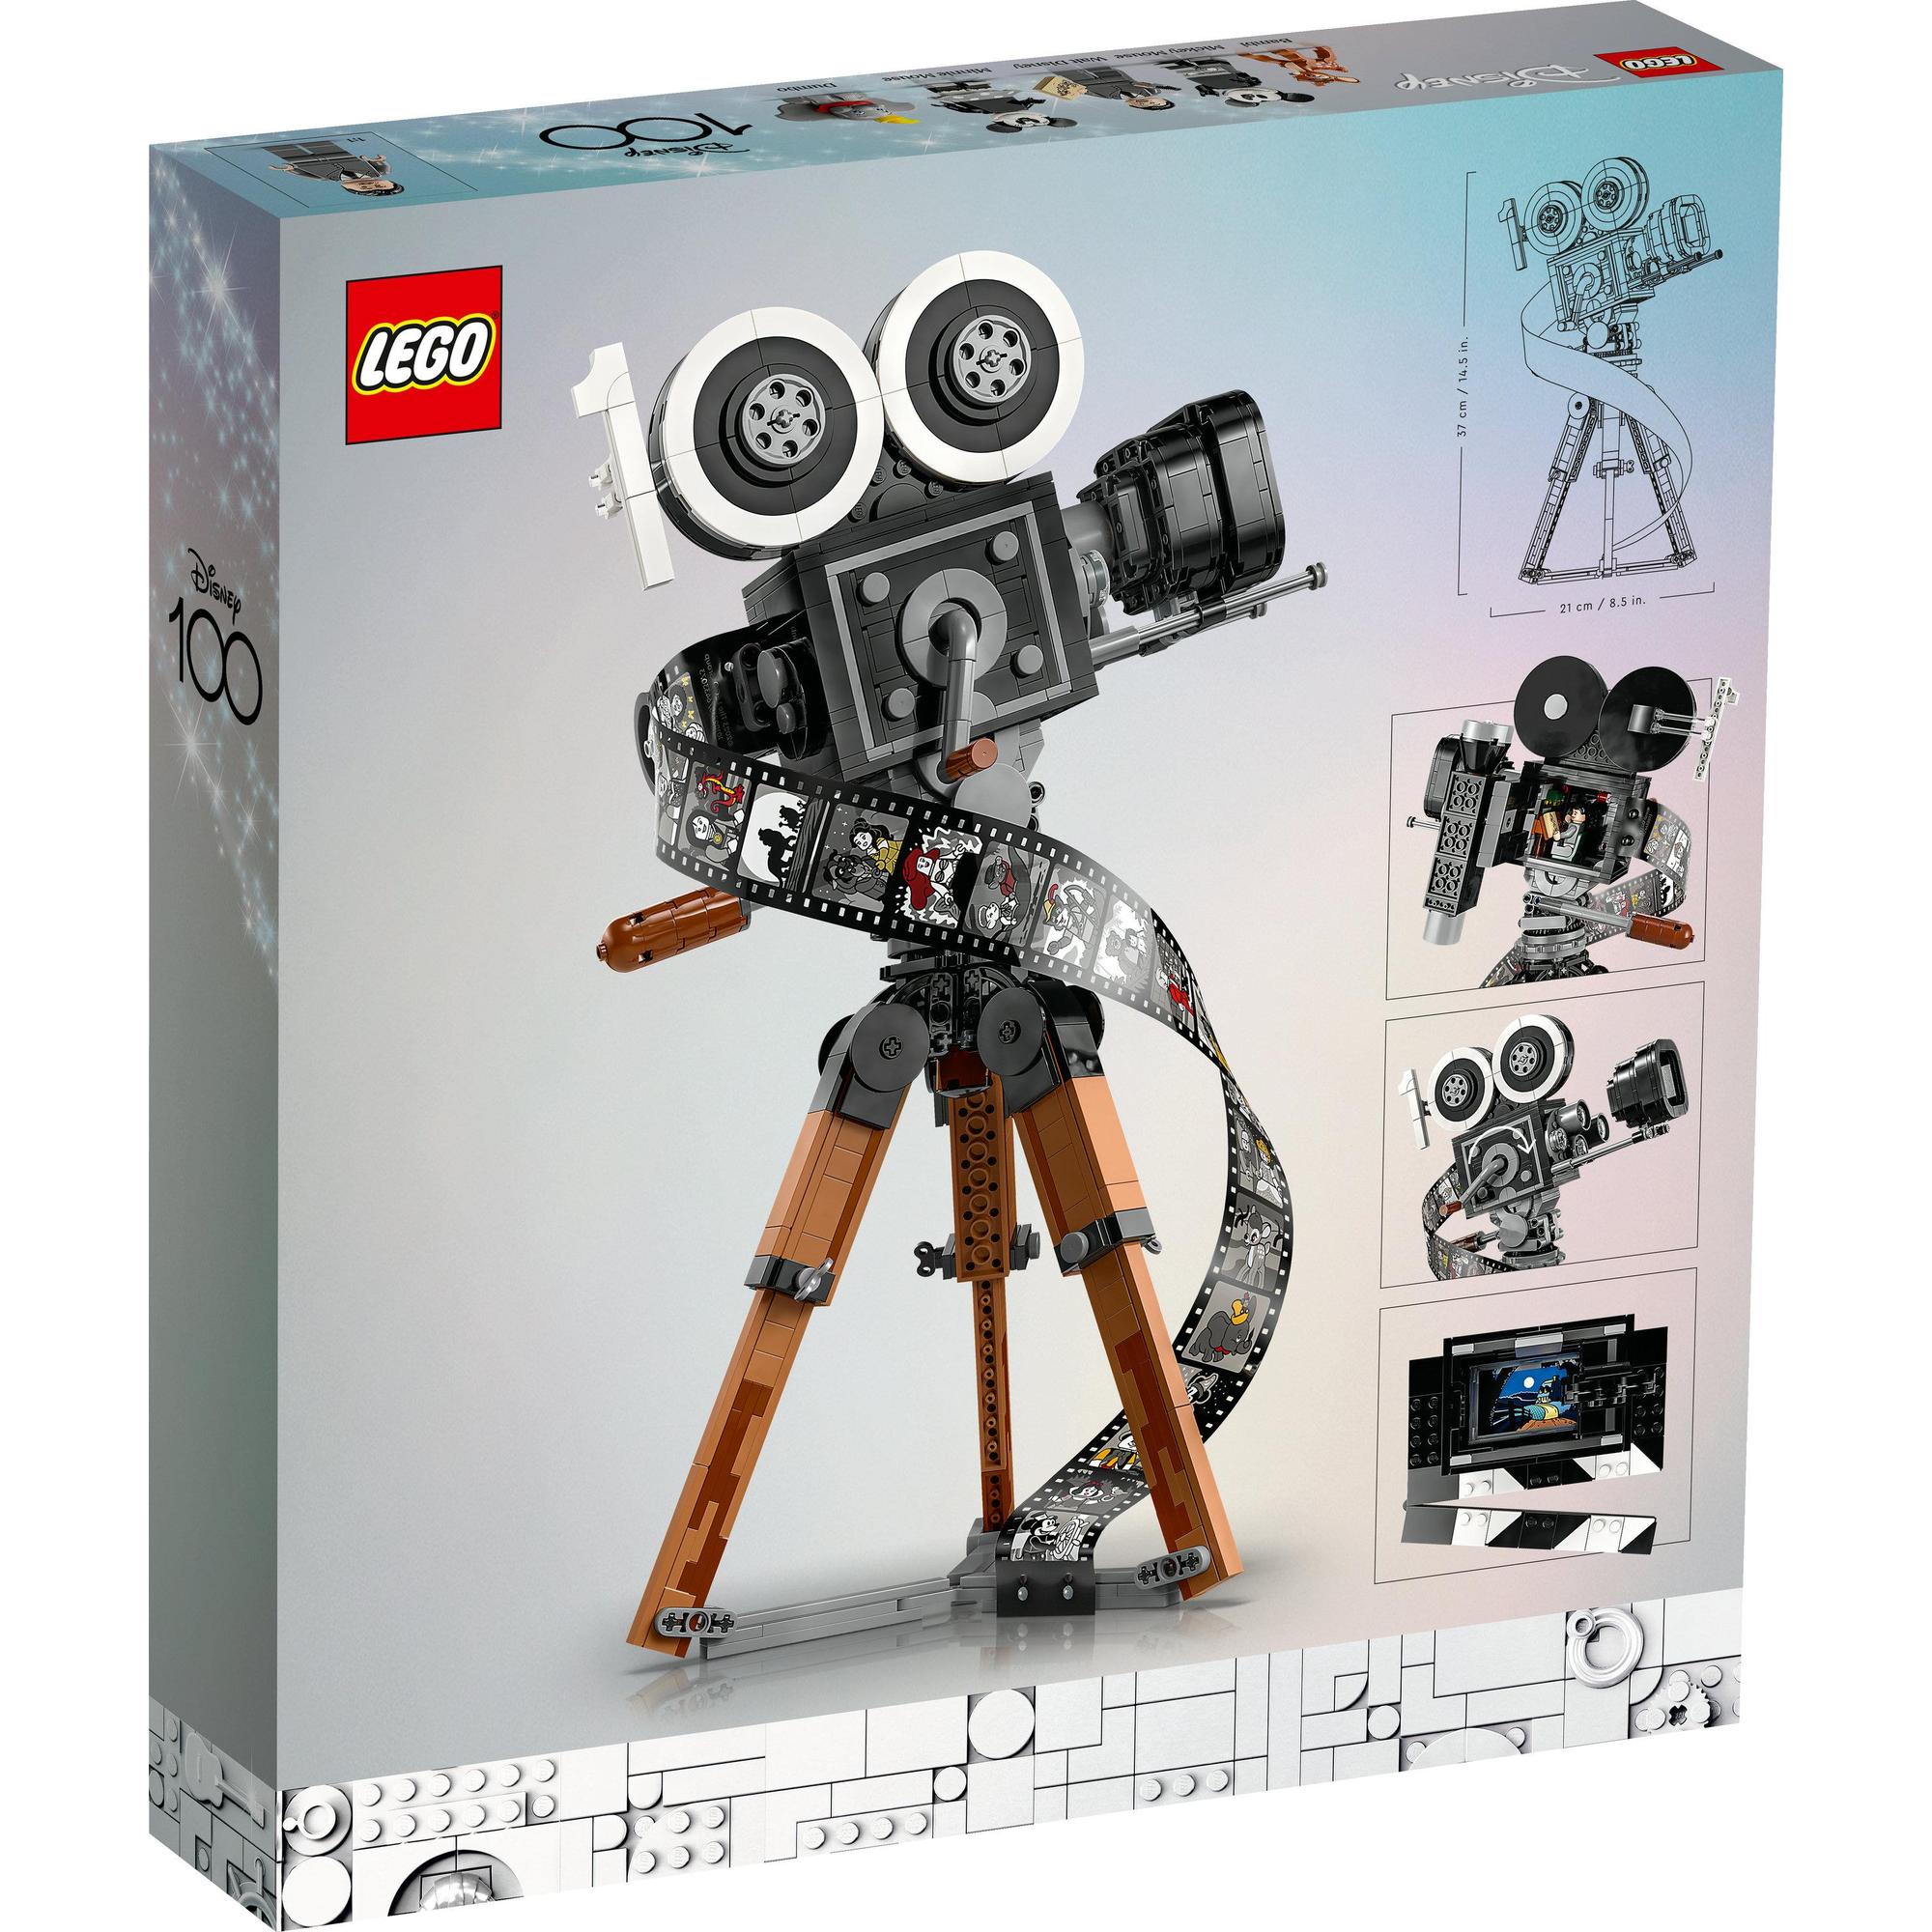 LEGO Disney 43230 Đồ chơi lắp ráp Mô hình máy quay phim cổ điển Walt Disney (811 chi tiết)